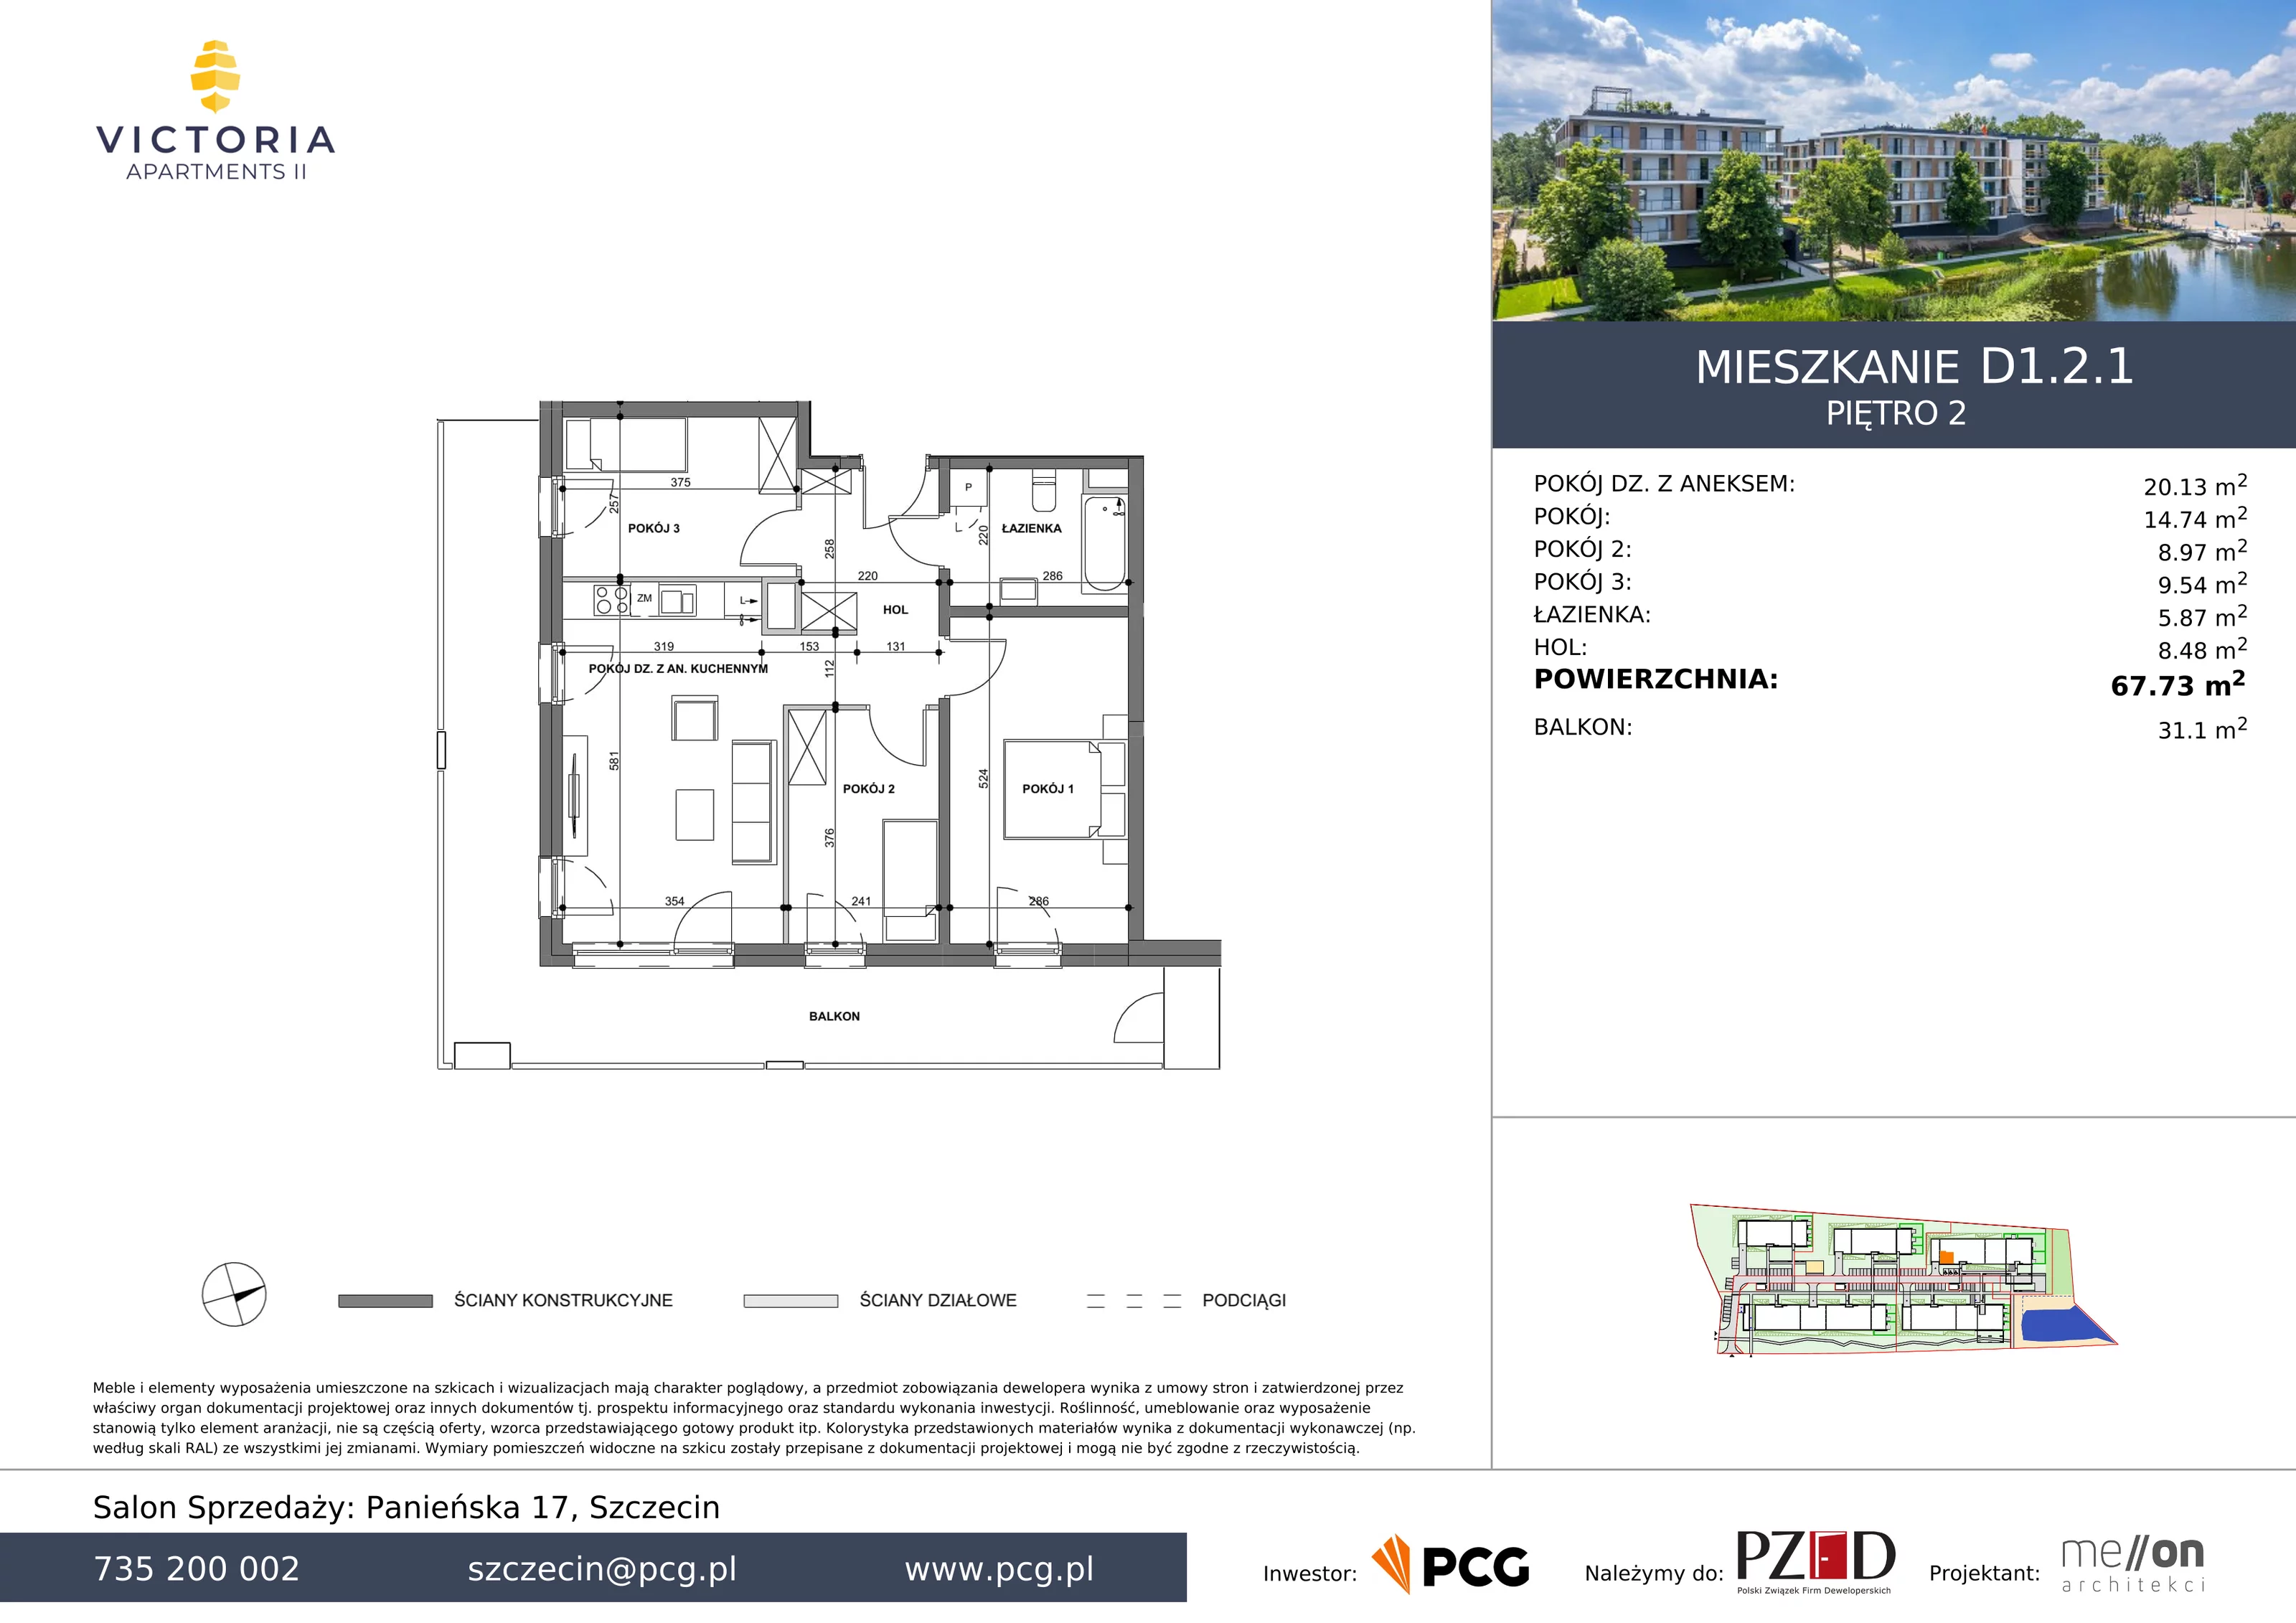 Apartament 67,73 m², piętro 2, oferta nr D1.2.1, Victoria Apartments II, Szczecin, Prawobrzeże, Dąbie, ul. Przestrzenna